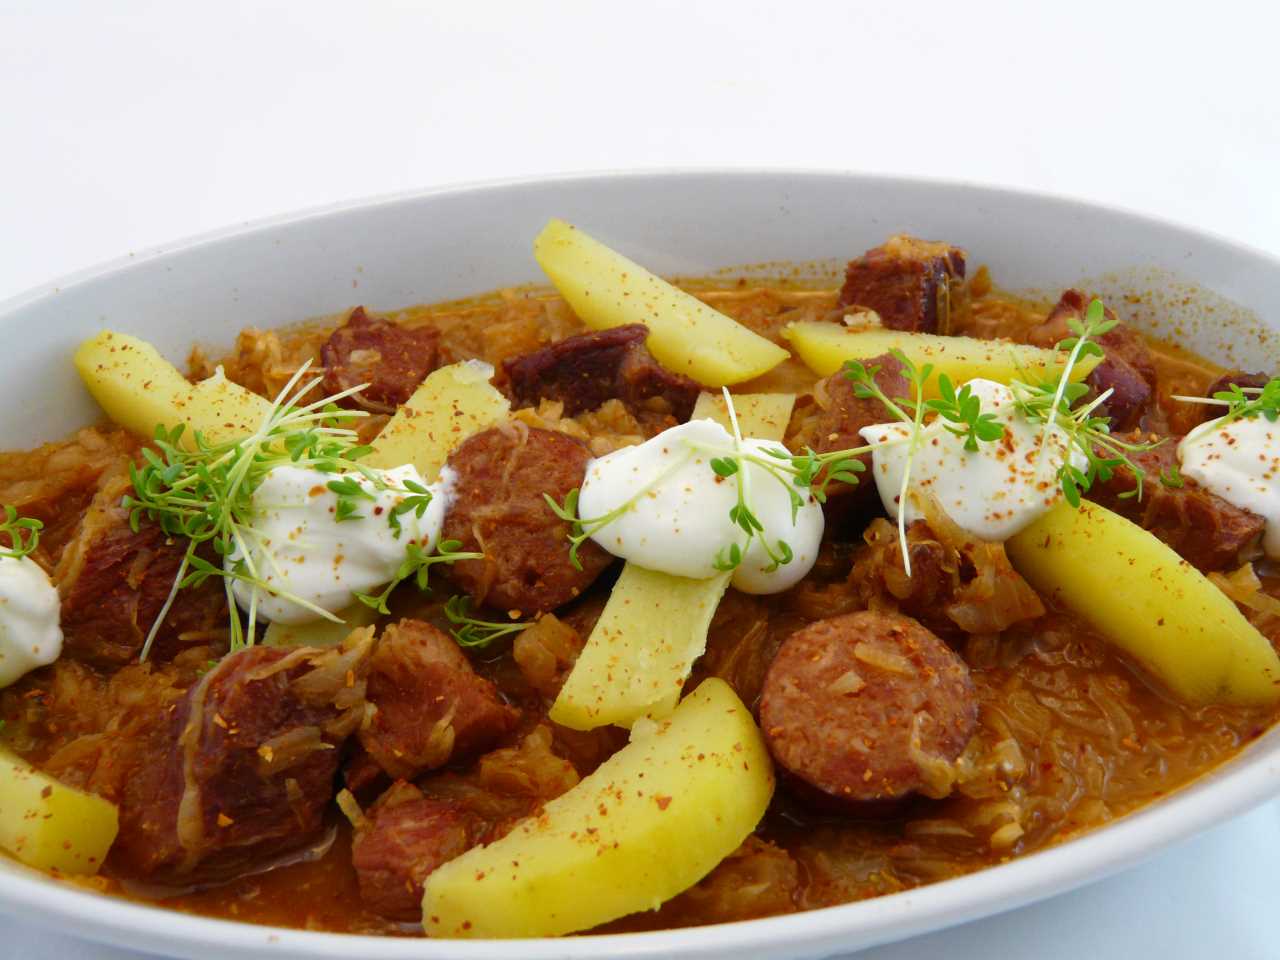 Bigos ein polnischer Sauerkraut-Eintopf mit Fleisch und Wurst